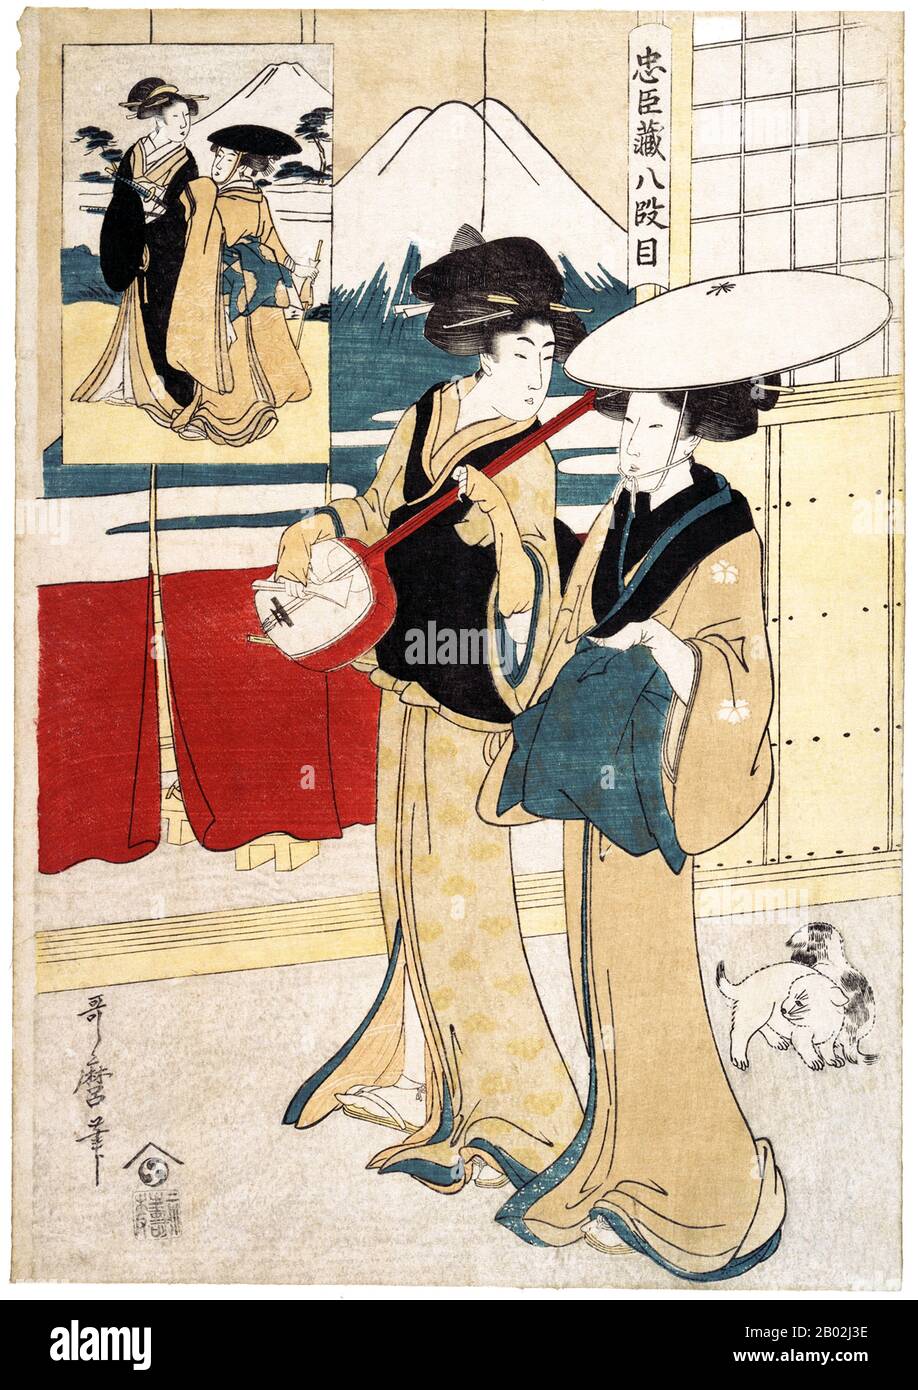 Japon: Tonase et Konami, deux tori-oi (鳥追い), ou des femmes itinérantes musiciens avec un shamisen. Loi Chustigura 8. Kitagawa Utamaro (vers 1753 - 31 octobre 1806), 1801. Kitagawa Utamaro était un graveur et peintre japonais, considéré comme l'un des plus grands artistes de gravures sur bois (ukiyo-e). Il est surtout connu pour ses études composées de femmes, connues sous le nom de bijinga. Il a également produit des études sur la nature, notamment des livres illustrés d'insectes. Banque D'Images